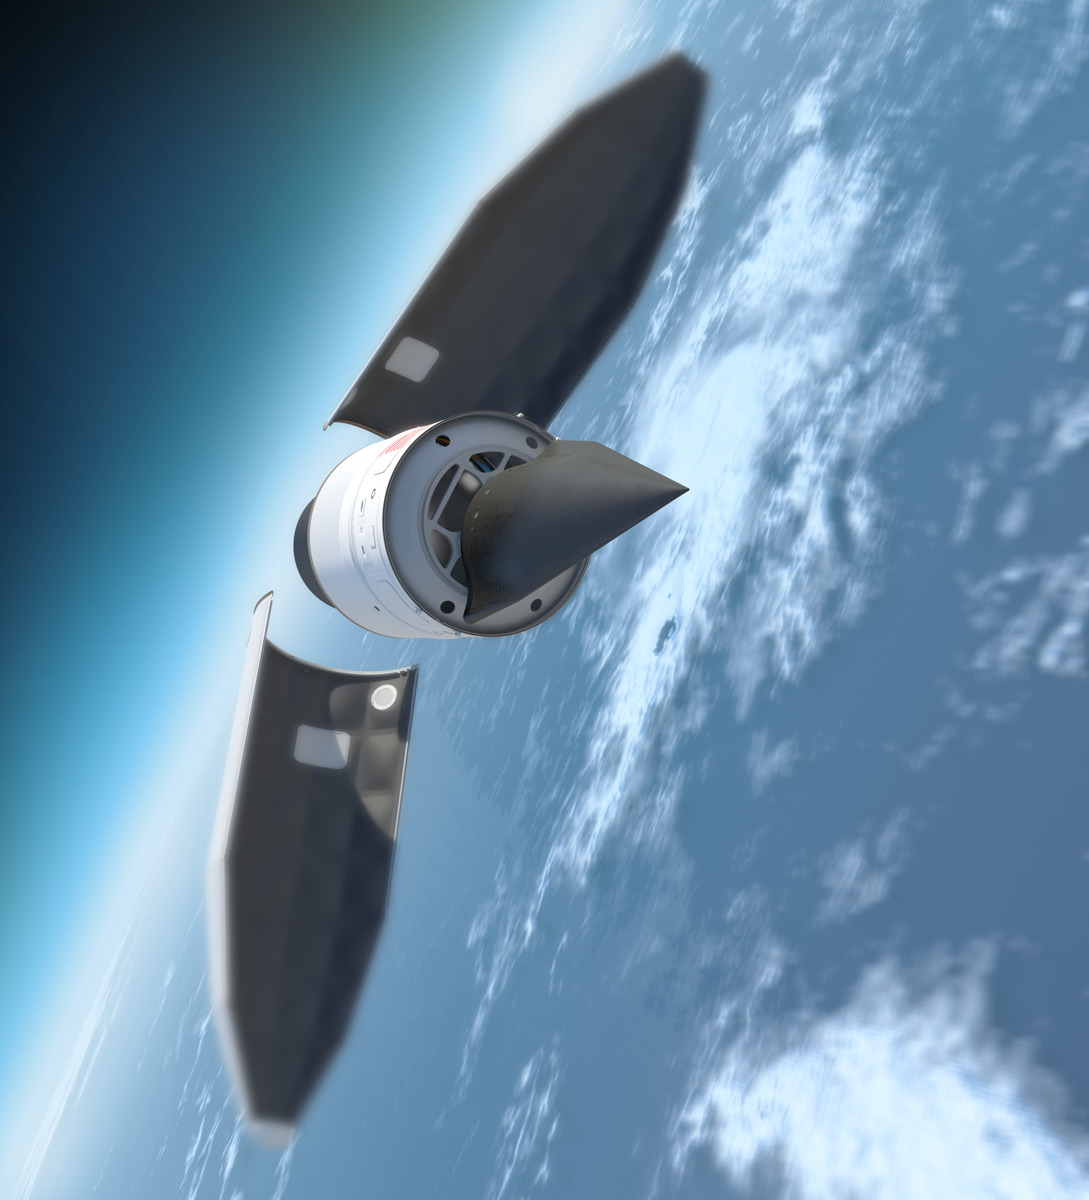 Le Falcon HTV (vue d'artiste), reconnaissable à sa forme triangulaire et à sa couleur noire, fixé sur le dernier étage de la fusée Minotaur IV, au moment où la coiffe se détache. © DR